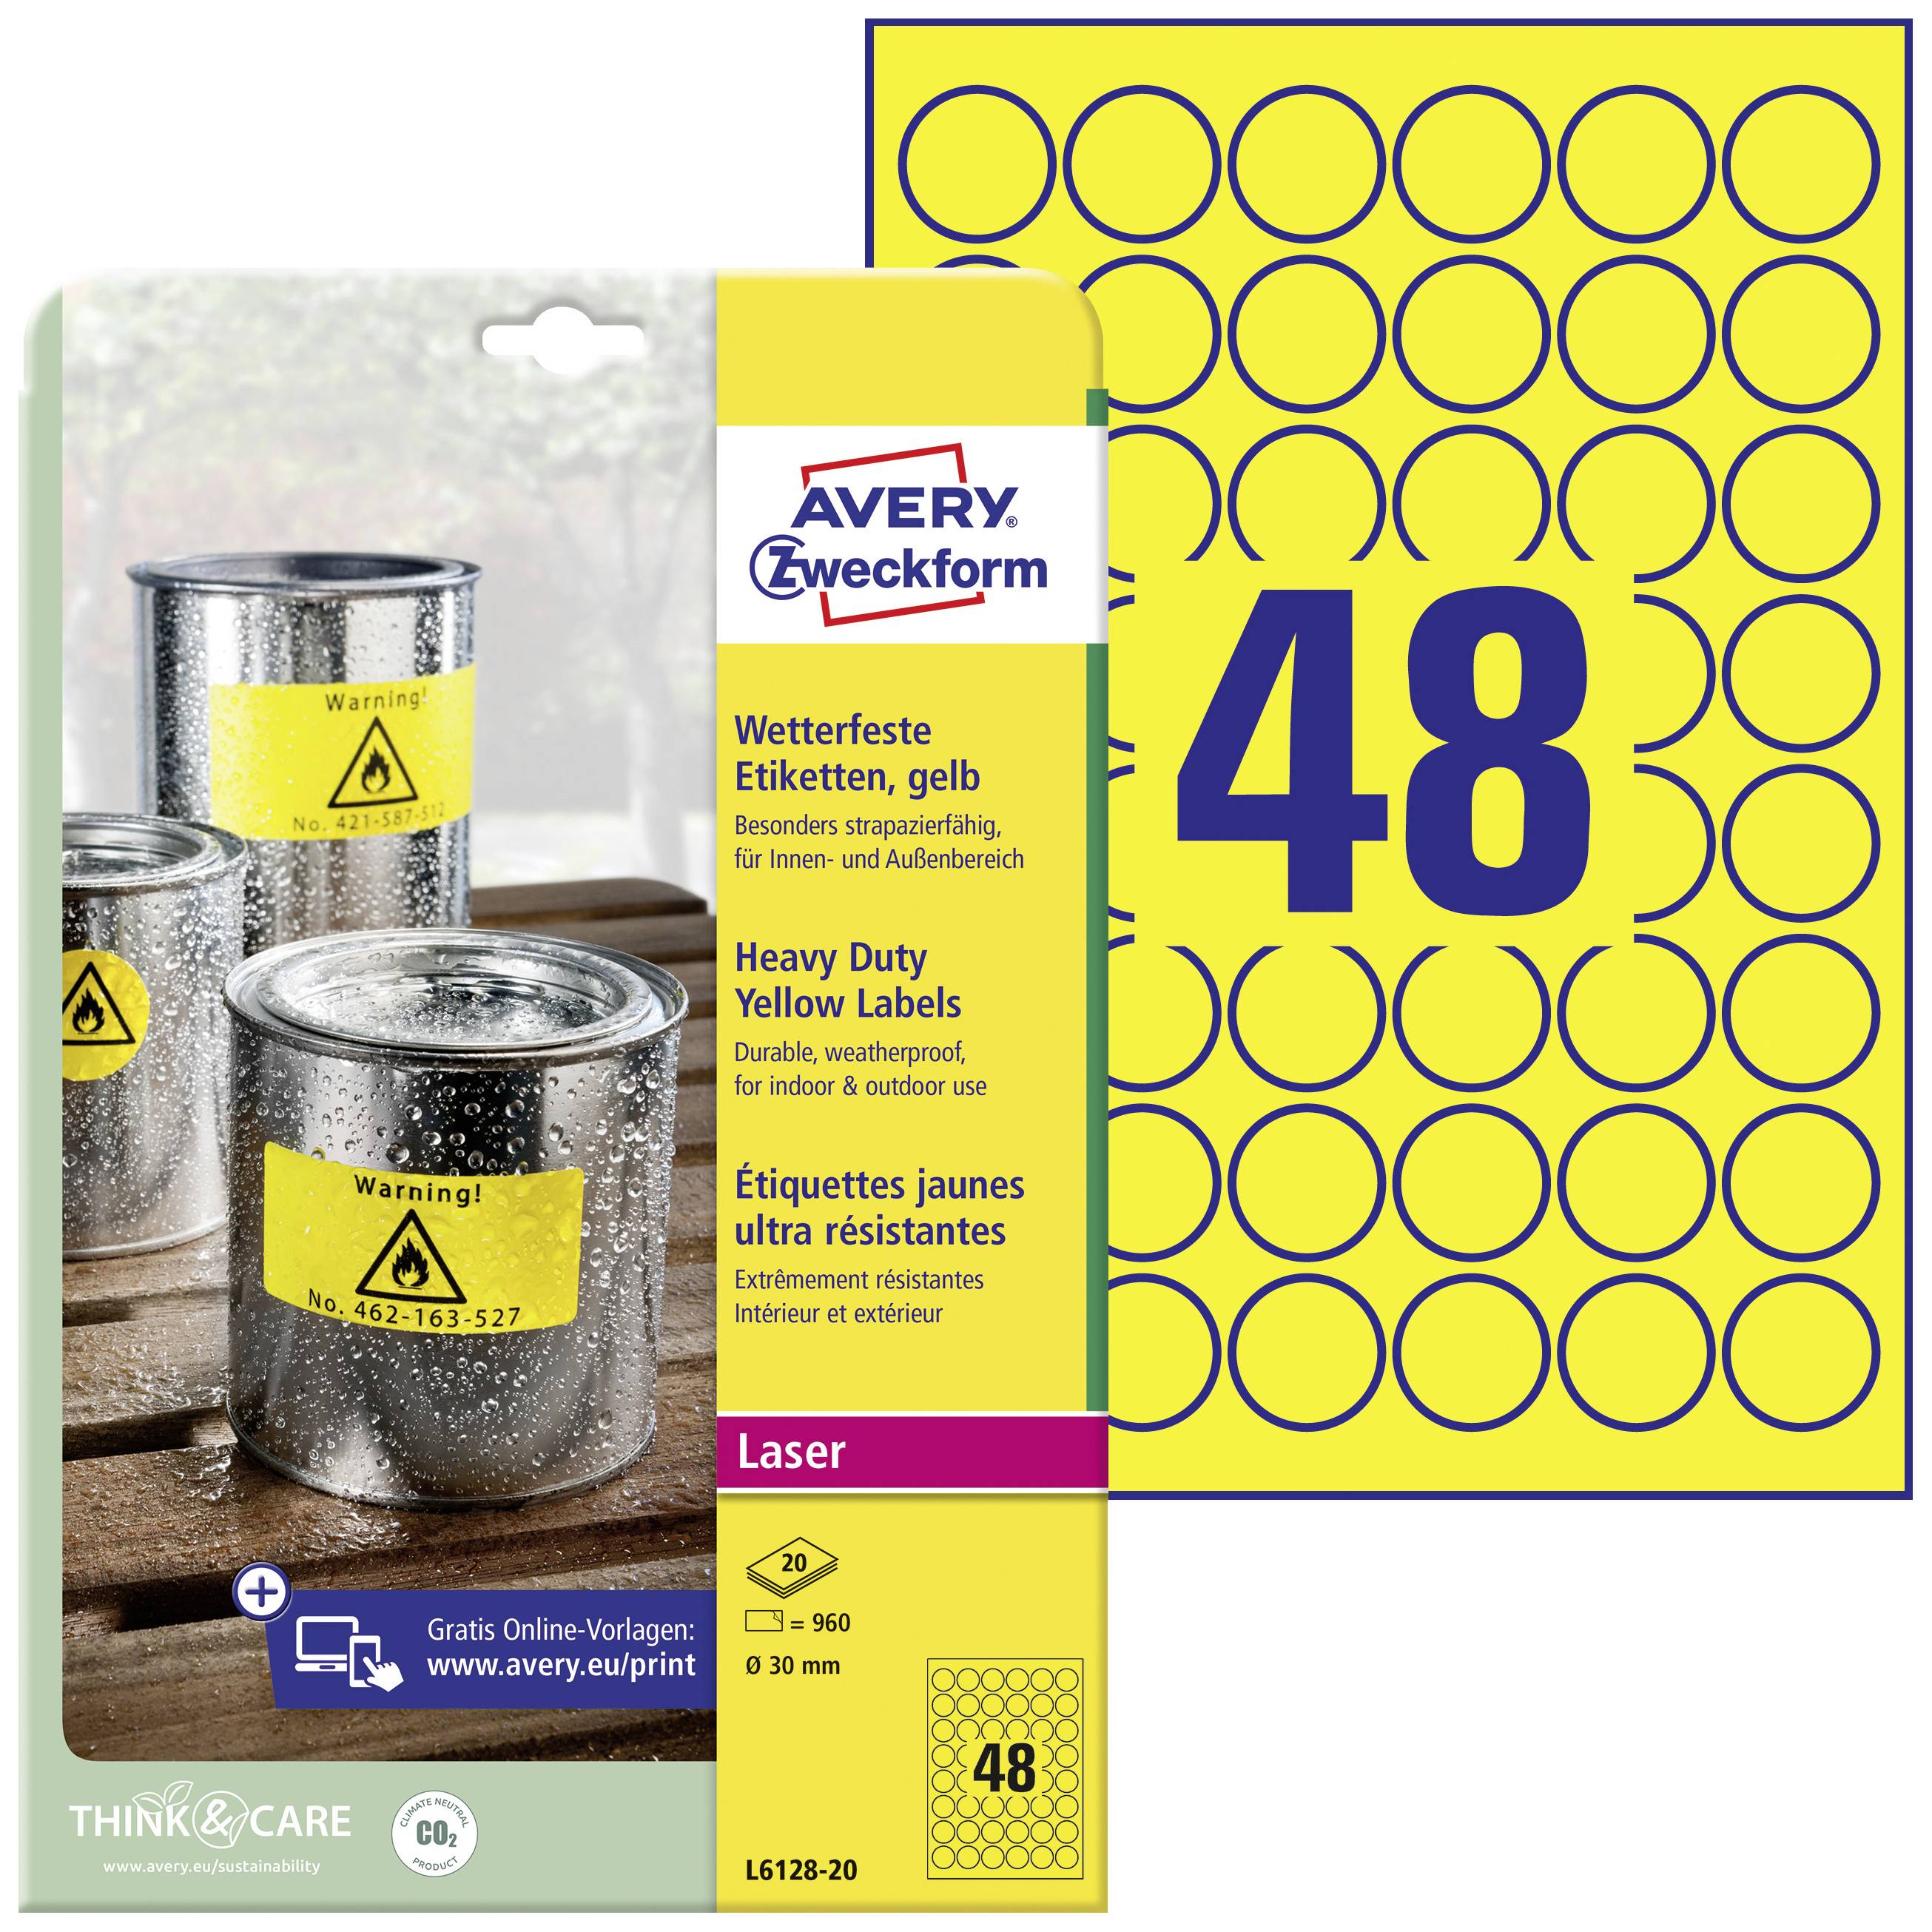 ZWECKFORM AVERY Folien-Etiketten, Durchmesser: 30 mm, gelb aus Polyester, wasserfest - 1 Stück (L612